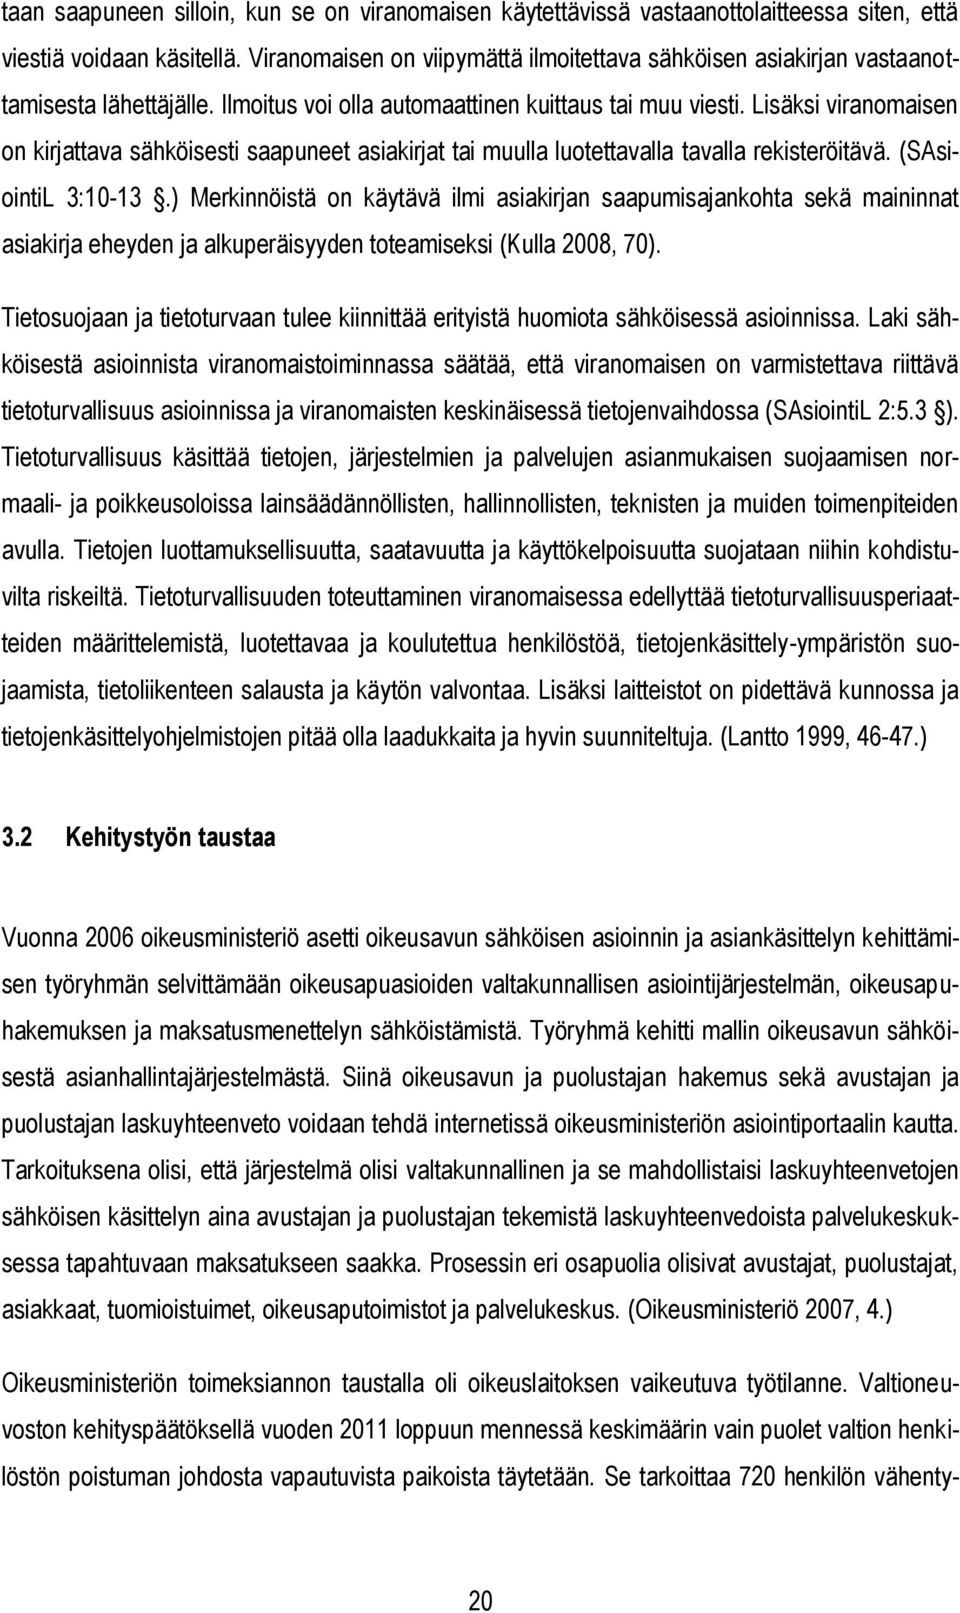 Niina Koski OIKEUSAVUN SÄHKÖINEN ASIANHALLINTAJÄRJESTELMÄ - PDF Ilmainen  lataus